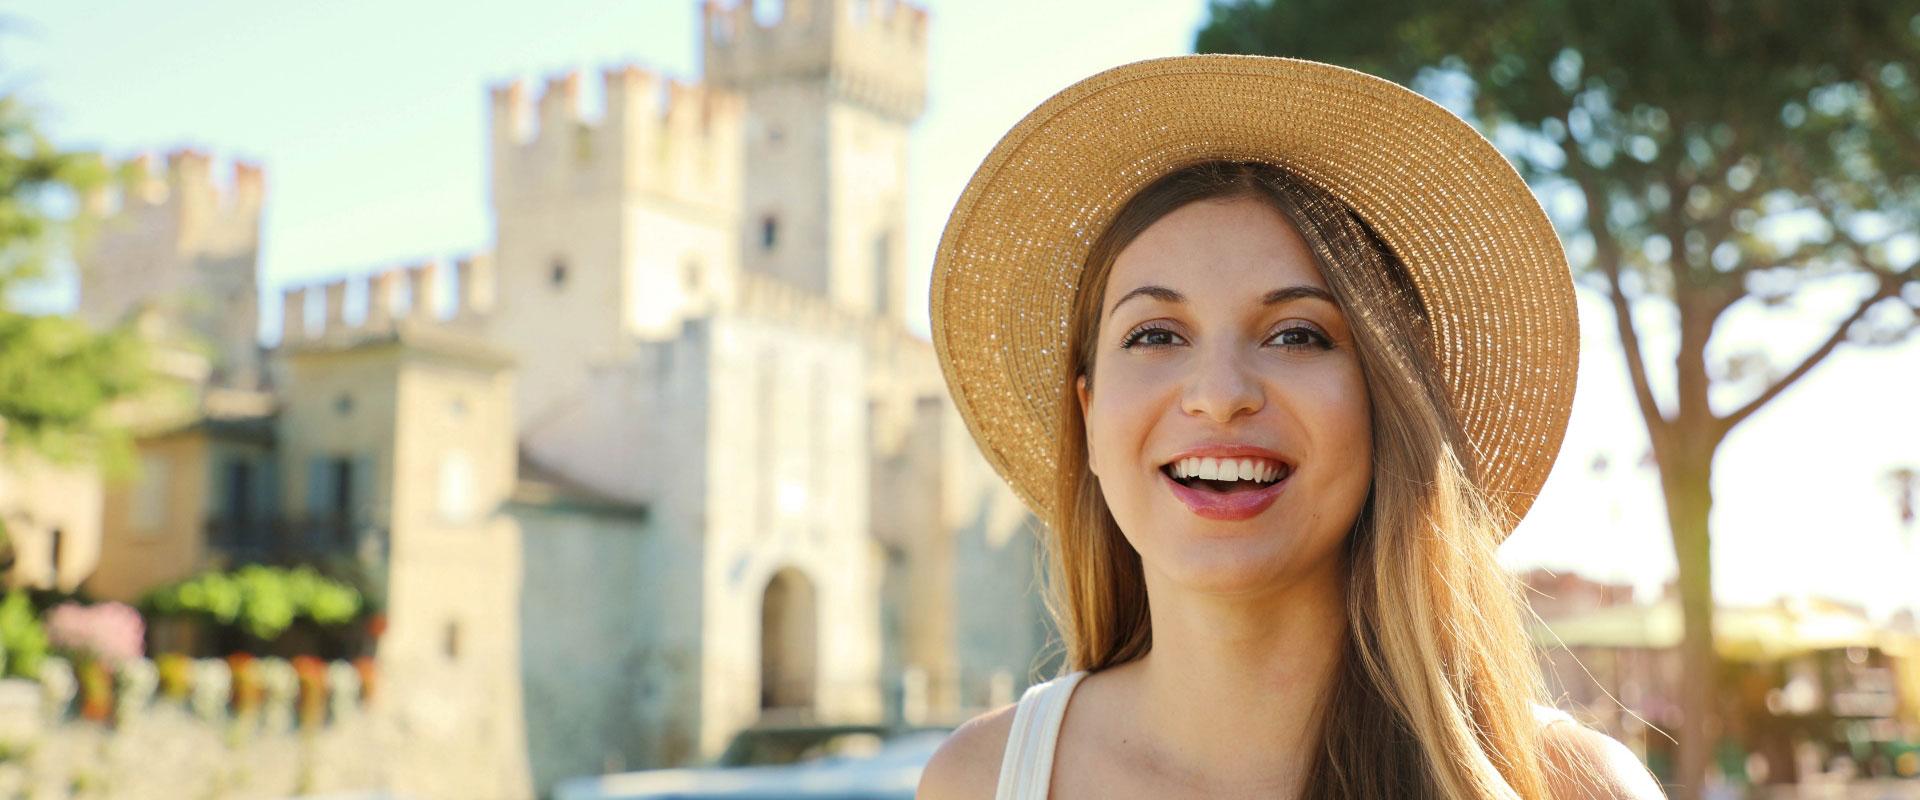 Donna sorridente con cappello di paglia davanti a un castello.